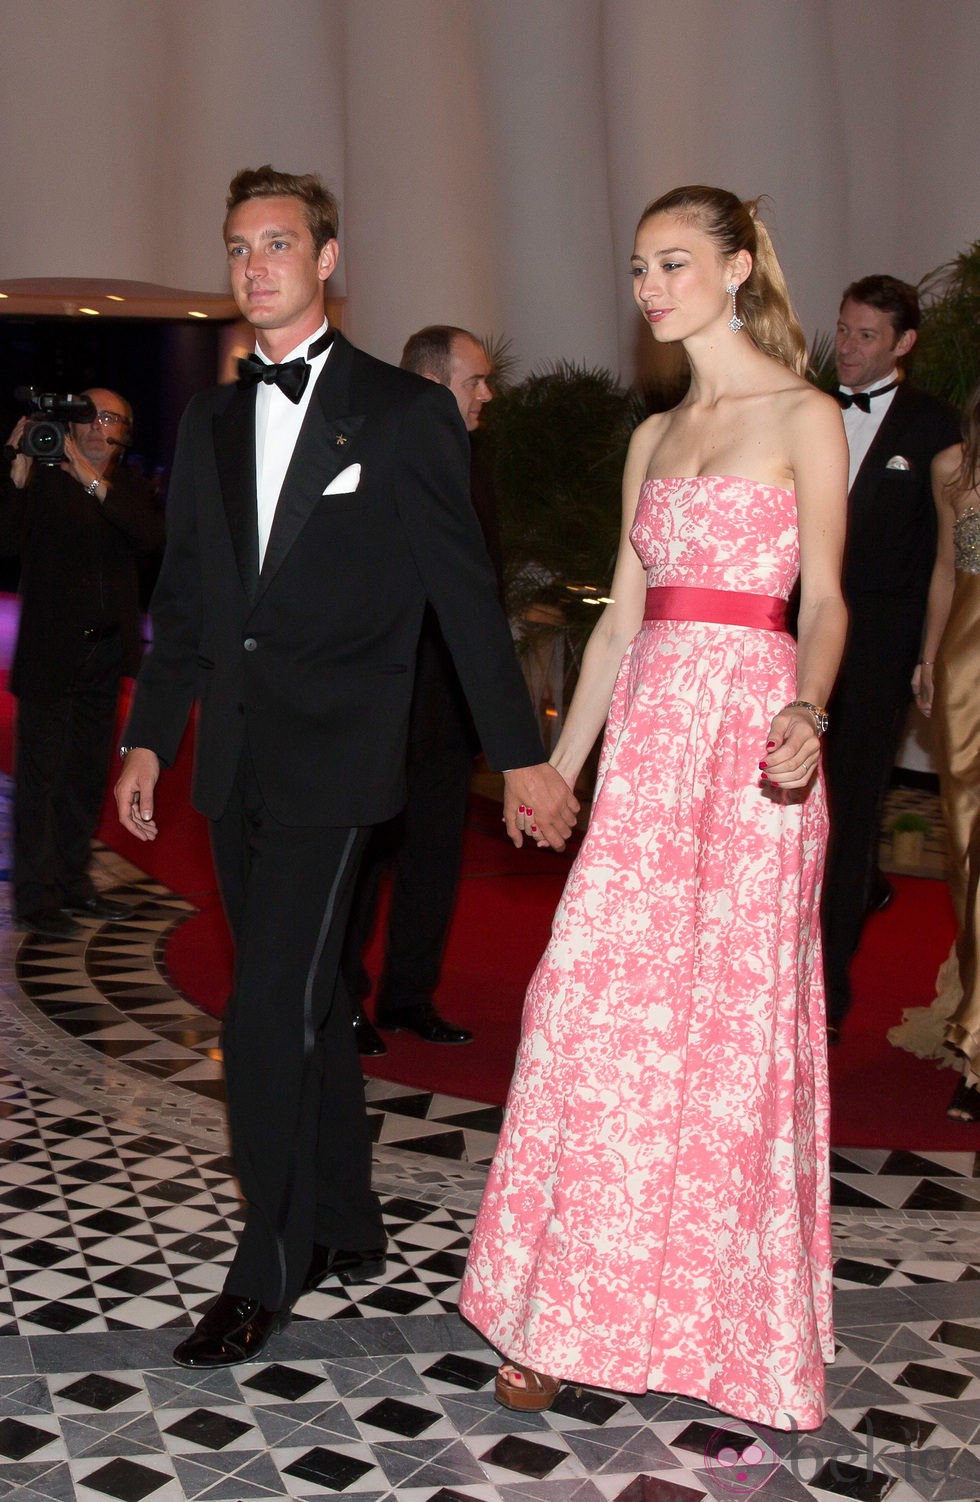 Pierre Casiraghi y Beatrice Borromeo en la fiesta tras el Gran Premio de Mónaco 2014